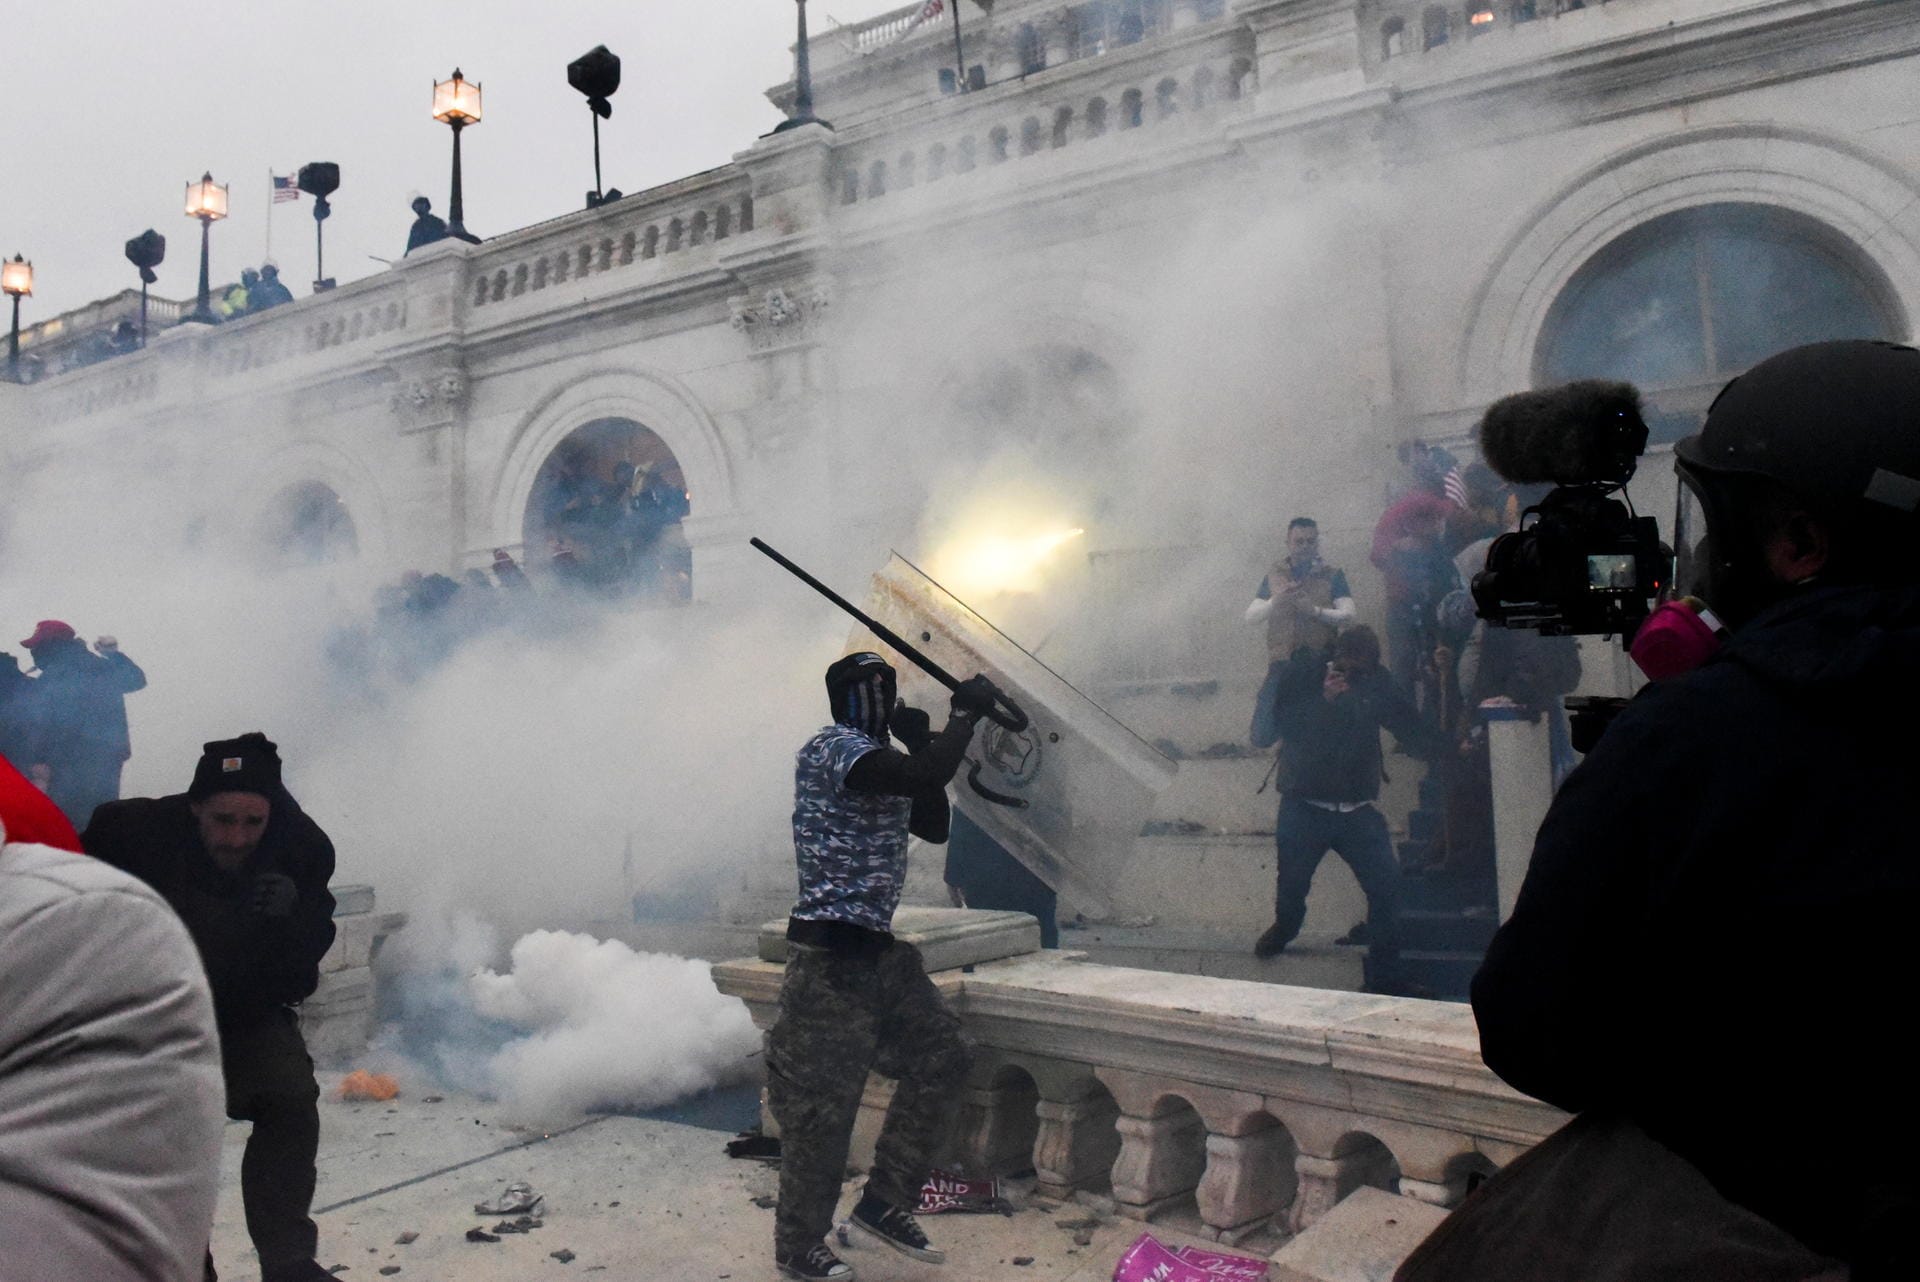 Die Polizei versucht, die Unruhen vor dem US-Kapitol mit Tränengas unter Kontrolle zu bringen. Auch in der Senatskammer soll Tränengas zum Einsatz gekommen sein.